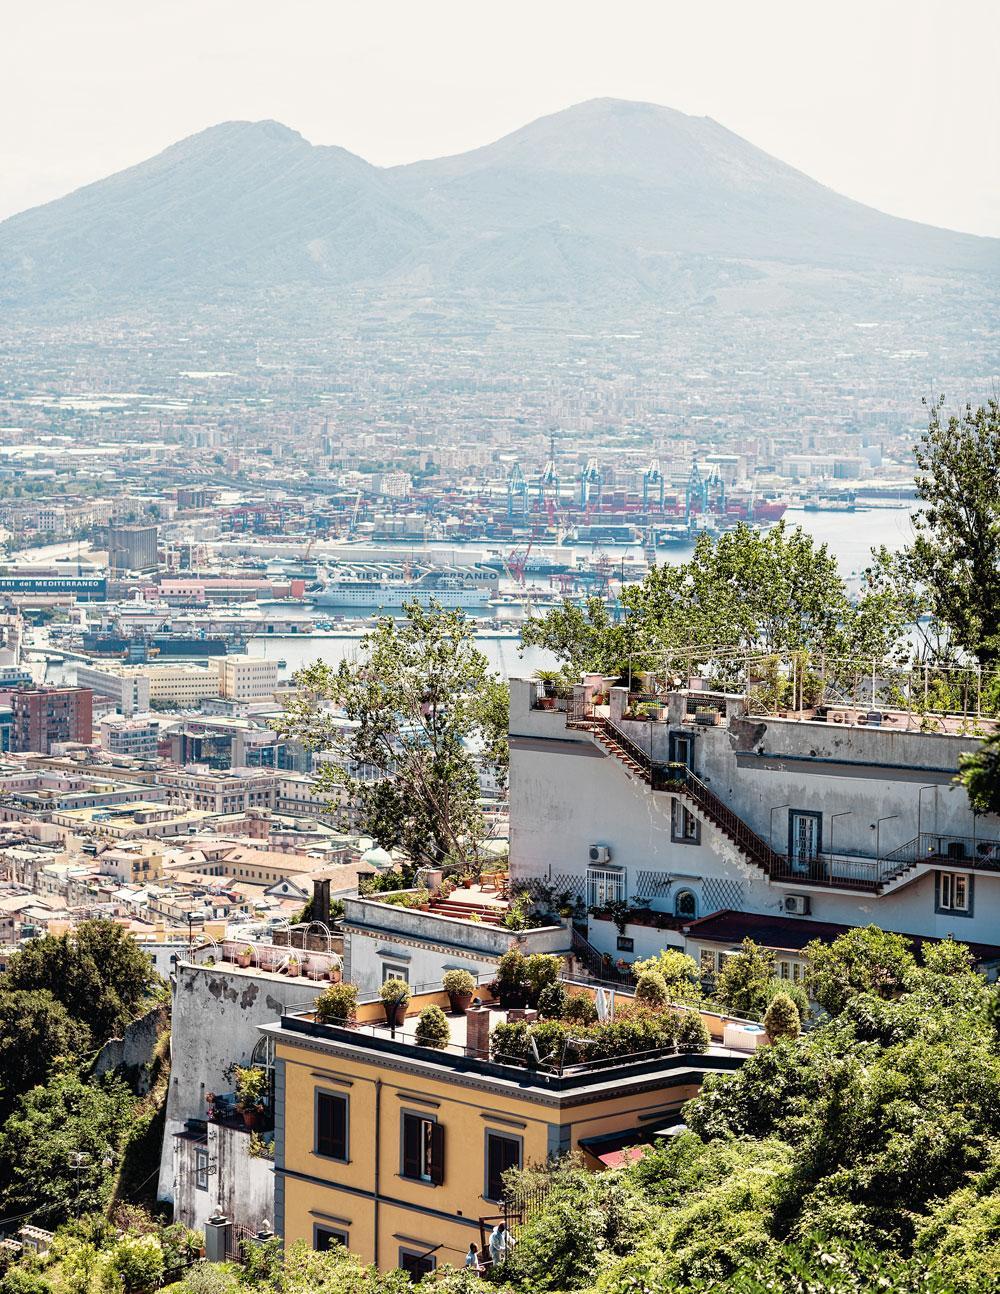 Uitzicht op de Vesuvius vanop Belvedere San Martino, een plein aan de voet van kasteel Sant'Elmo.